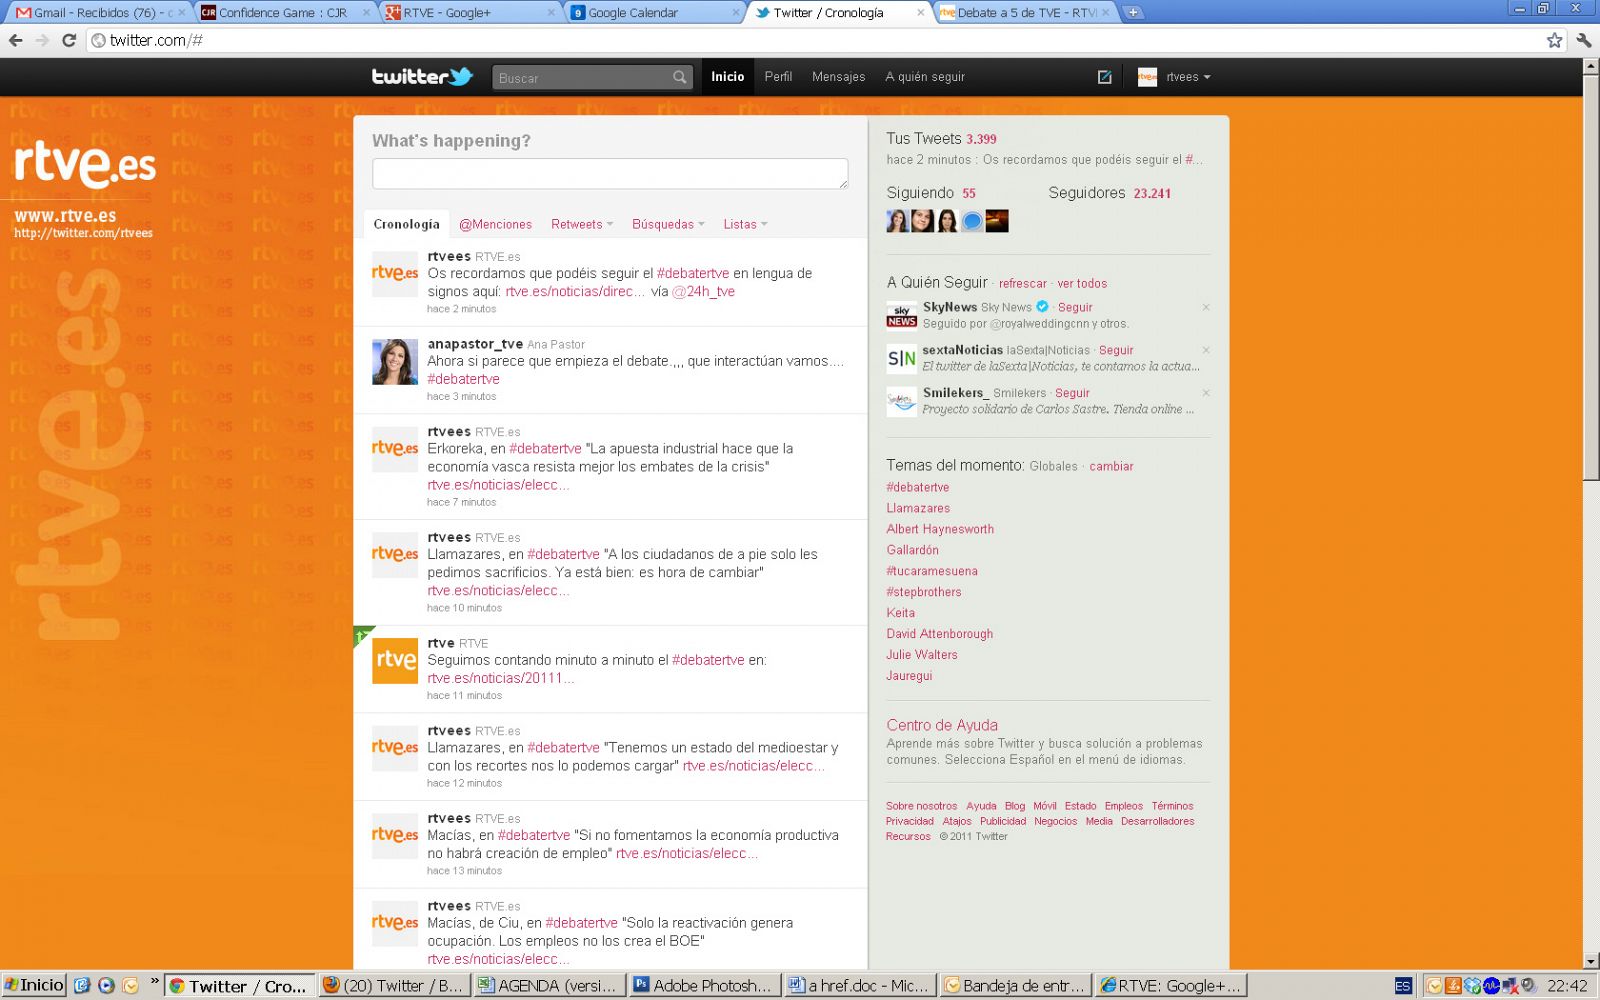 Imagen del Twitter de RTVE.es y el 'hashtag' #debatertve, como 'trending topic' mundial